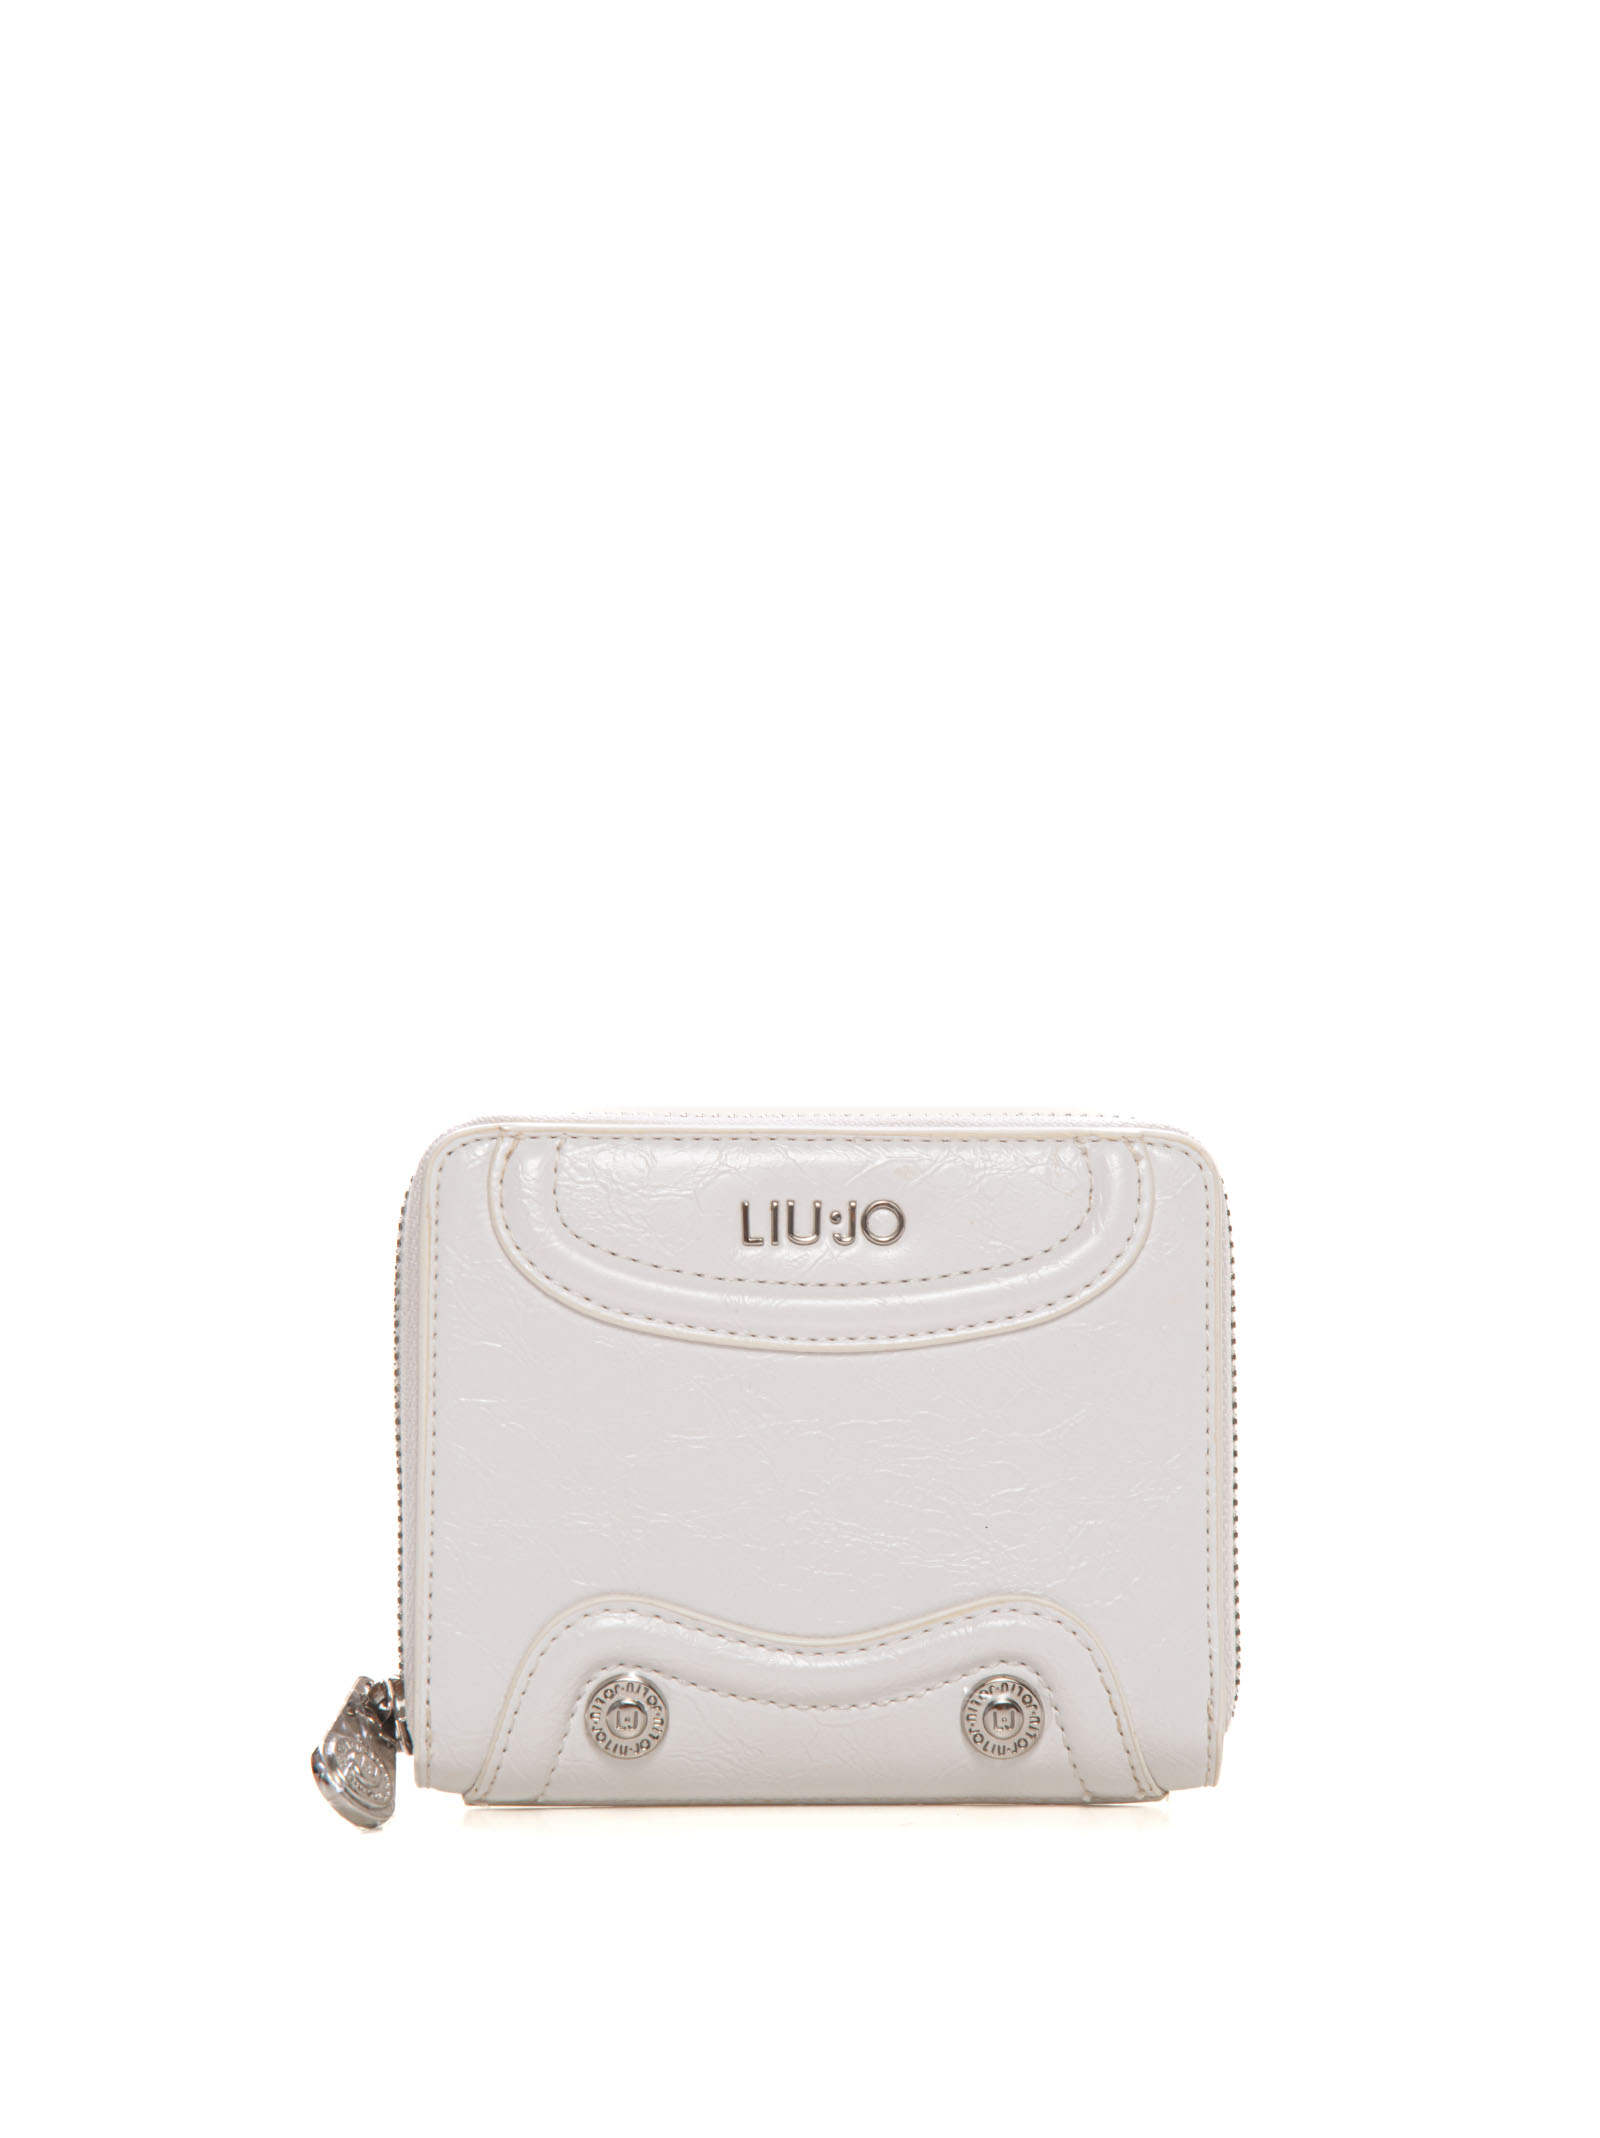 Liu •jo Wallet Small Size In White